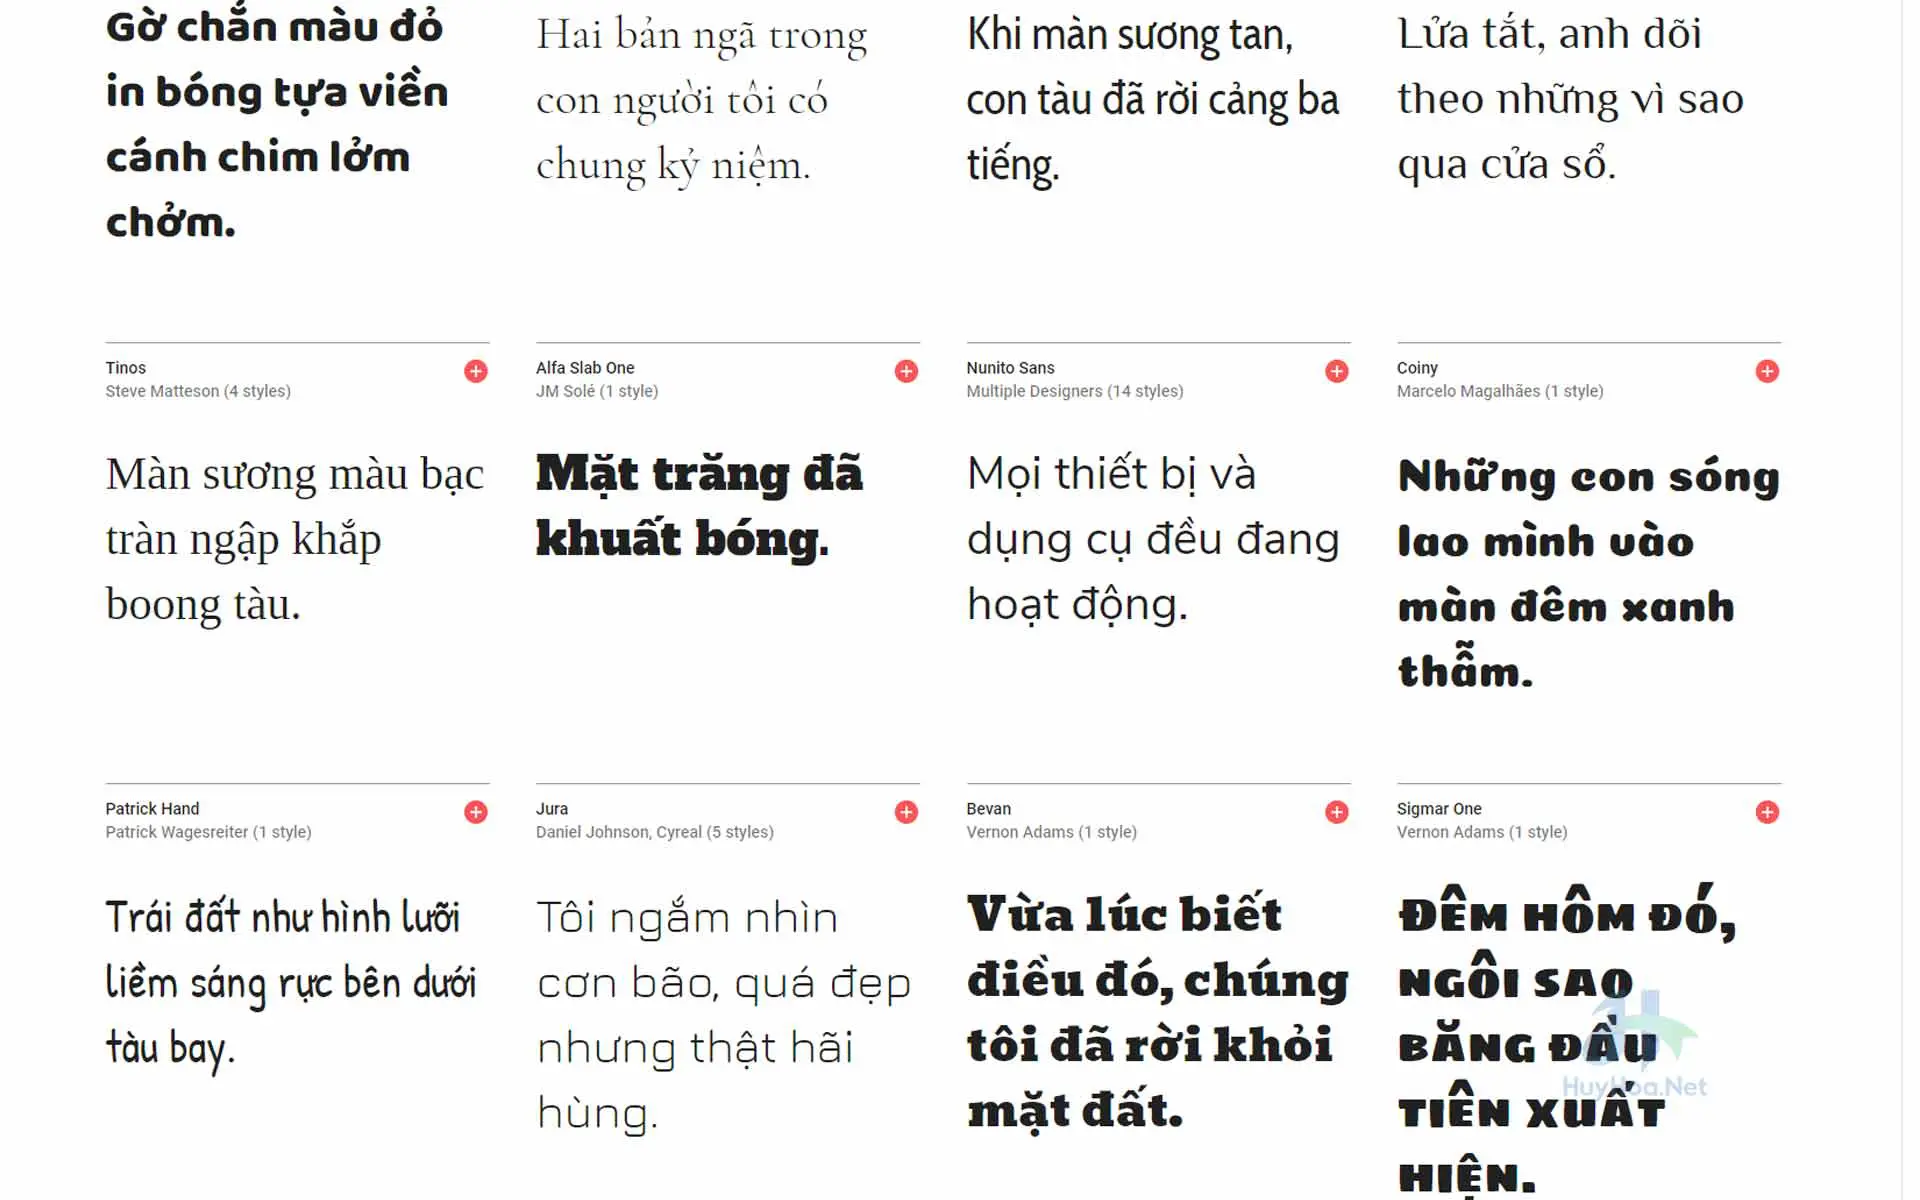 Công Ty TNHH SBMEDIA Font chữ đẹp Unicode 2024 - đơn vị chuyên phát triển và cung cấp các loại Fonts chữ độc đáo và chất lượng. Luôn đổi mới và cập nhật những phông chữ mới nhất giúp cho bài viết của bạn luôn được tạo ấn tượng với độc giả.